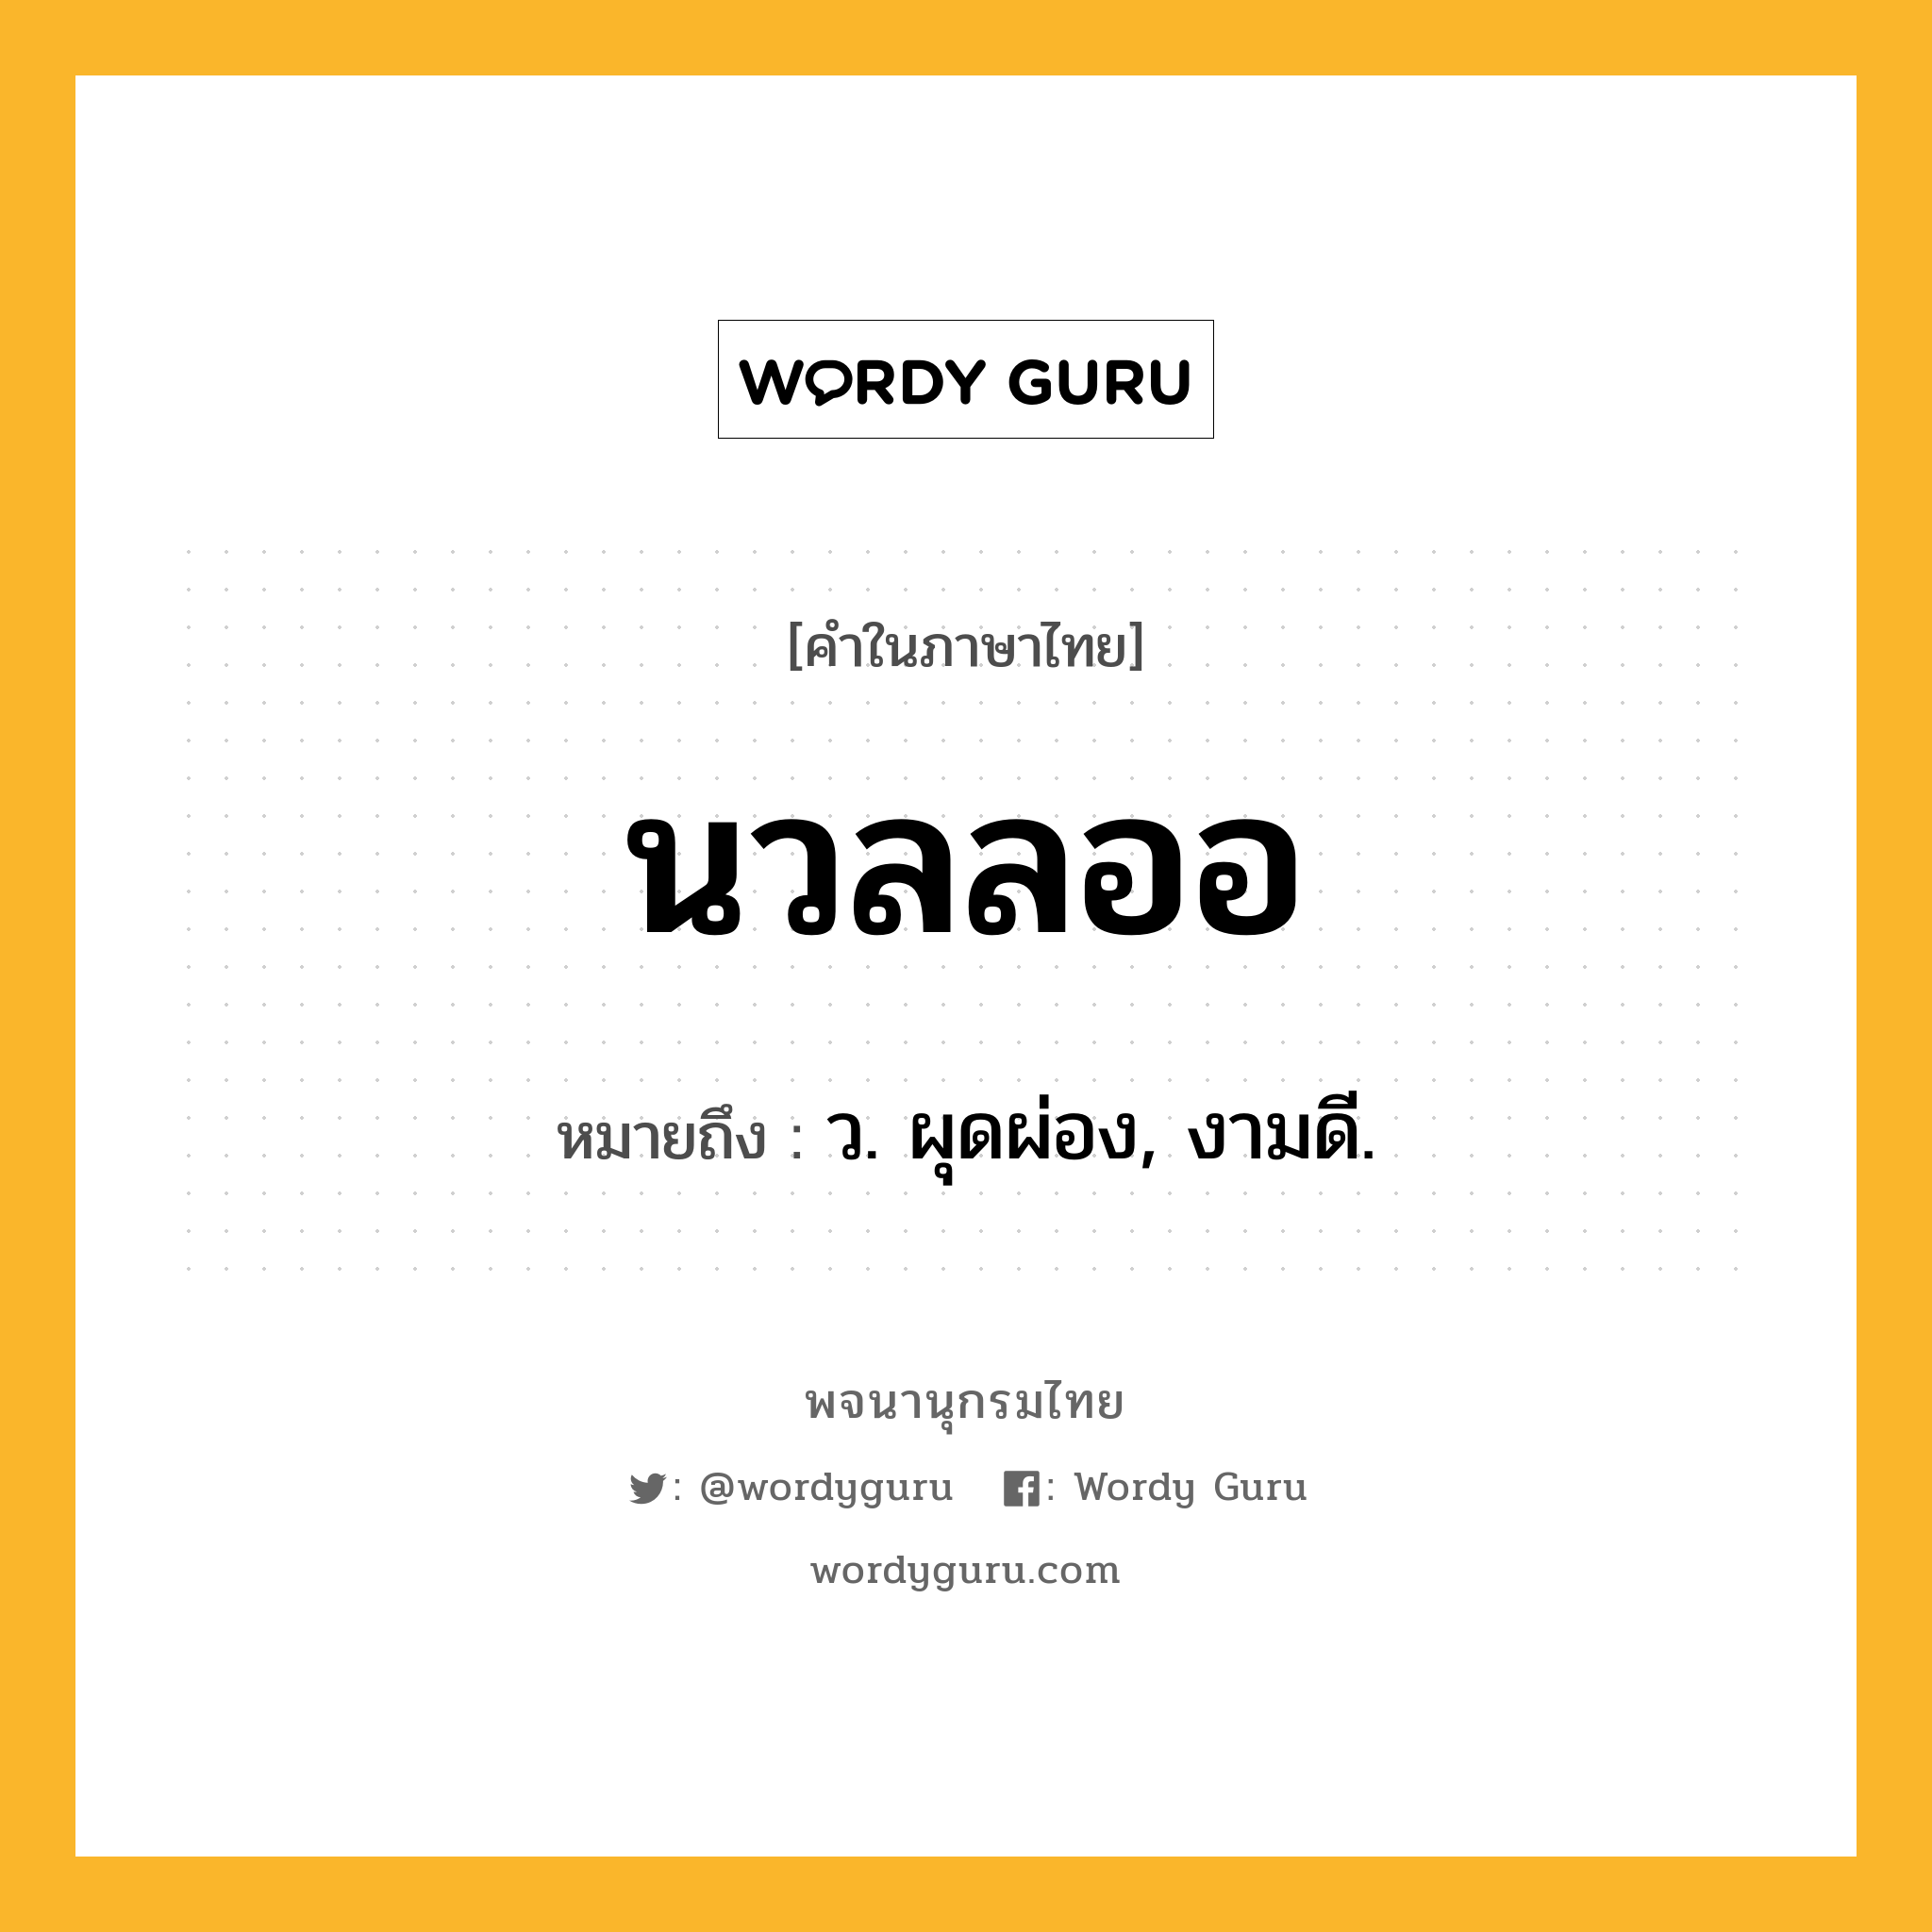 นวลลออ ความหมาย หมายถึงอะไร?, คำในภาษาไทย นวลลออ หมายถึง ว. ผุดผ่อง, งามดี.